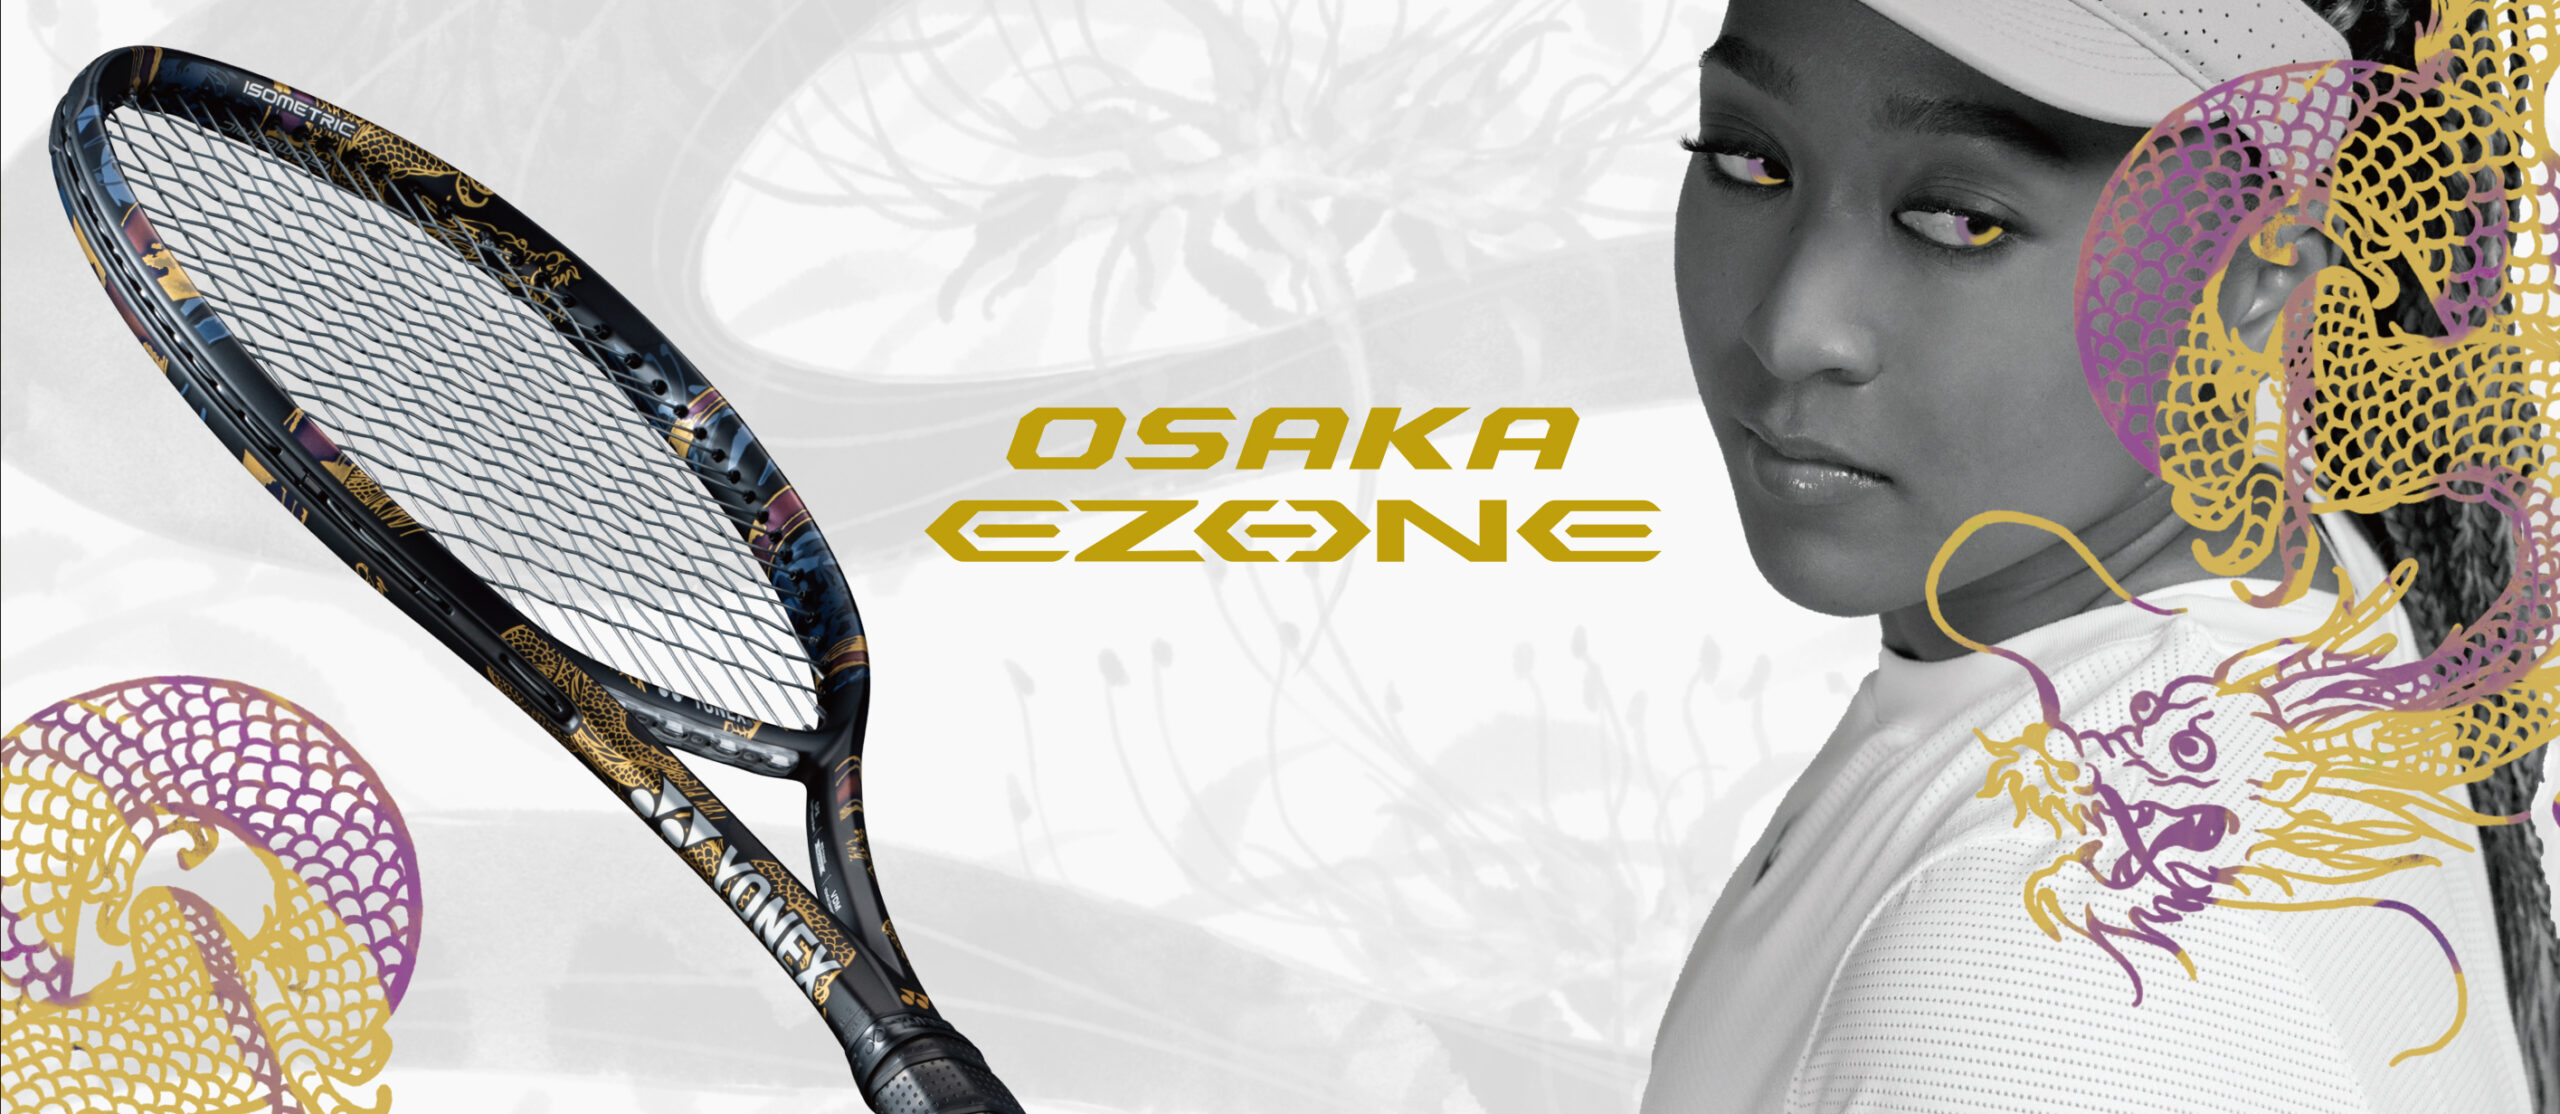 大坂なおみと姉まりさんがデザインをプロデュースした「OSAKA EZONE 